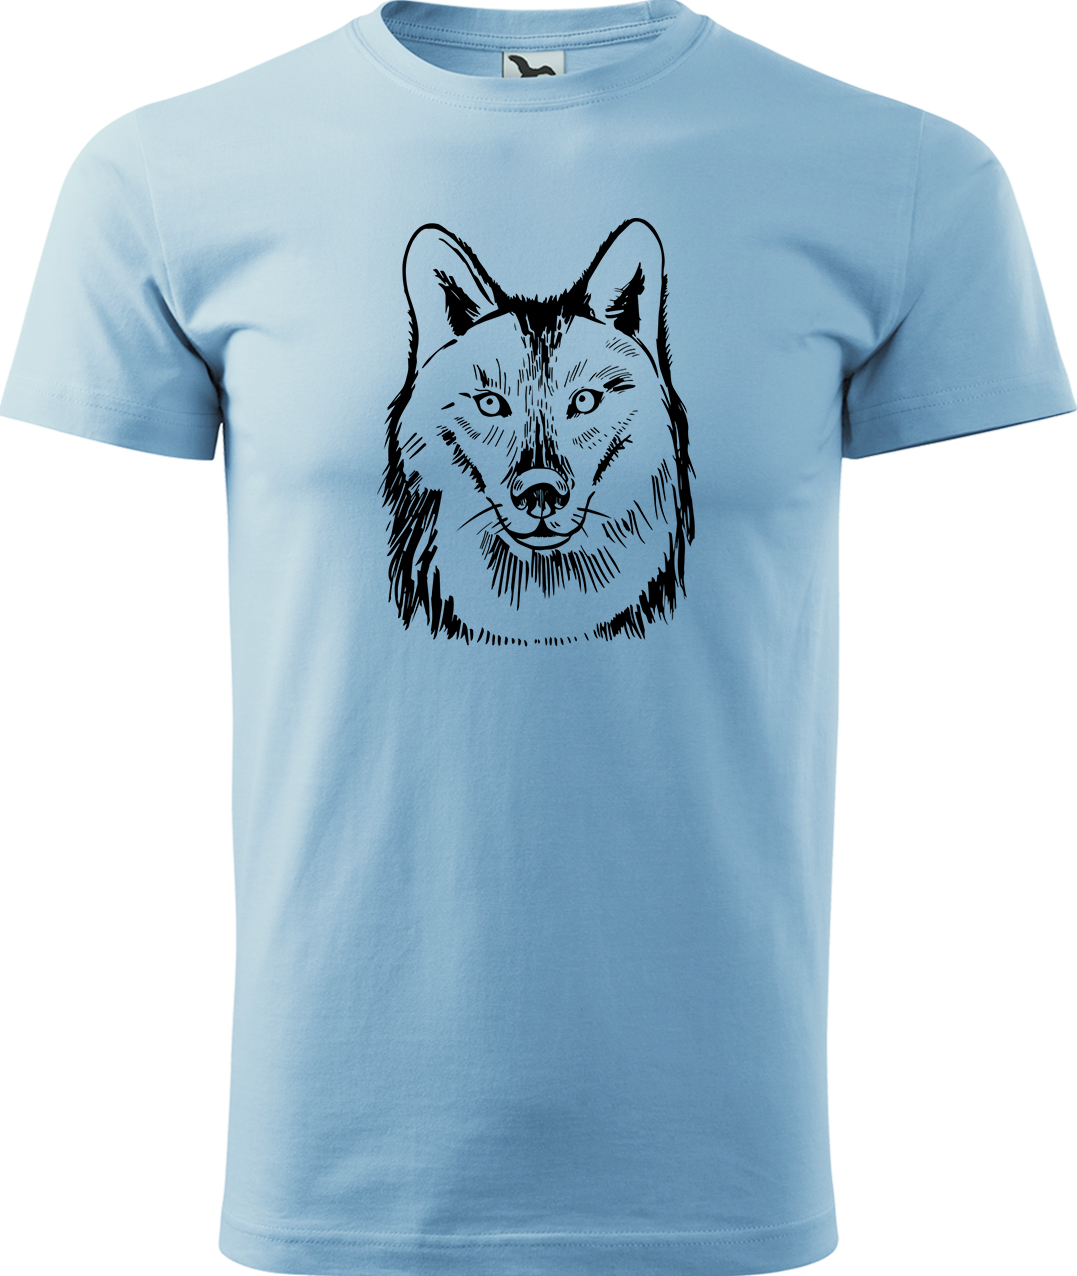 Pánské tričko s vlkem - Kresba vlka Velikost: XL, Barva: Nebesky modrá (15), Střih: pánský